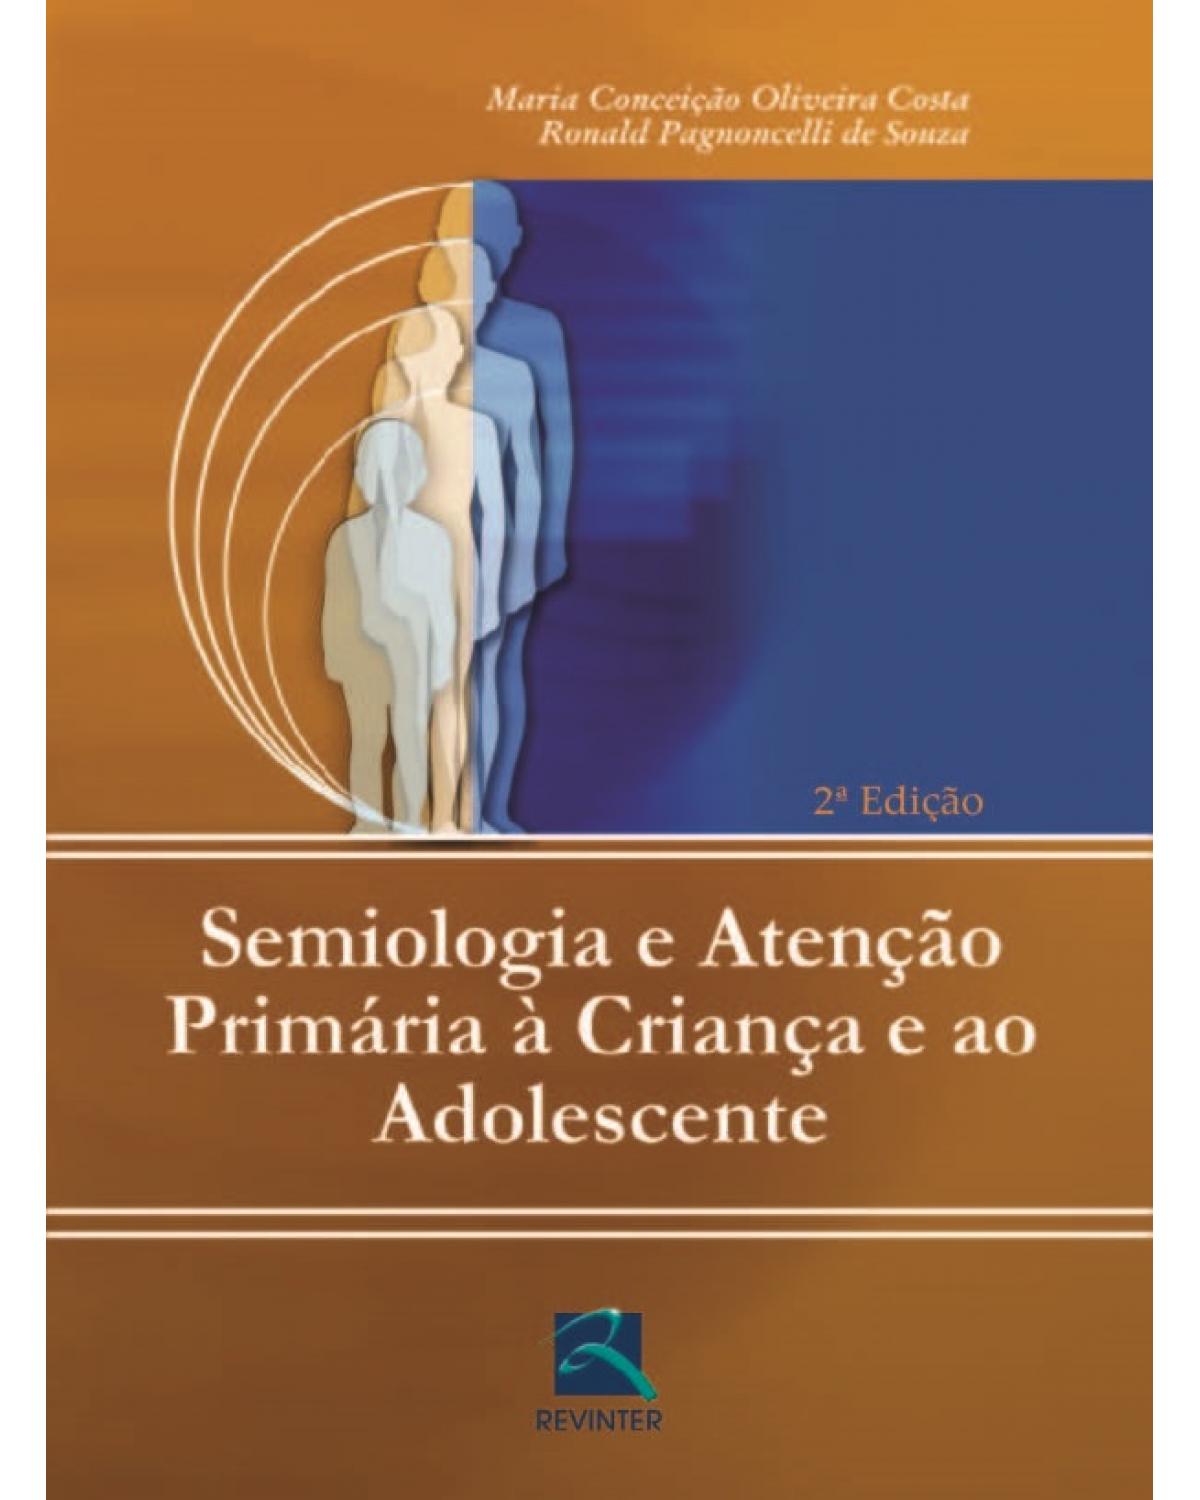 Semiologia e atenção primária à criança e ao adolescente - 2ª Edição | 2005